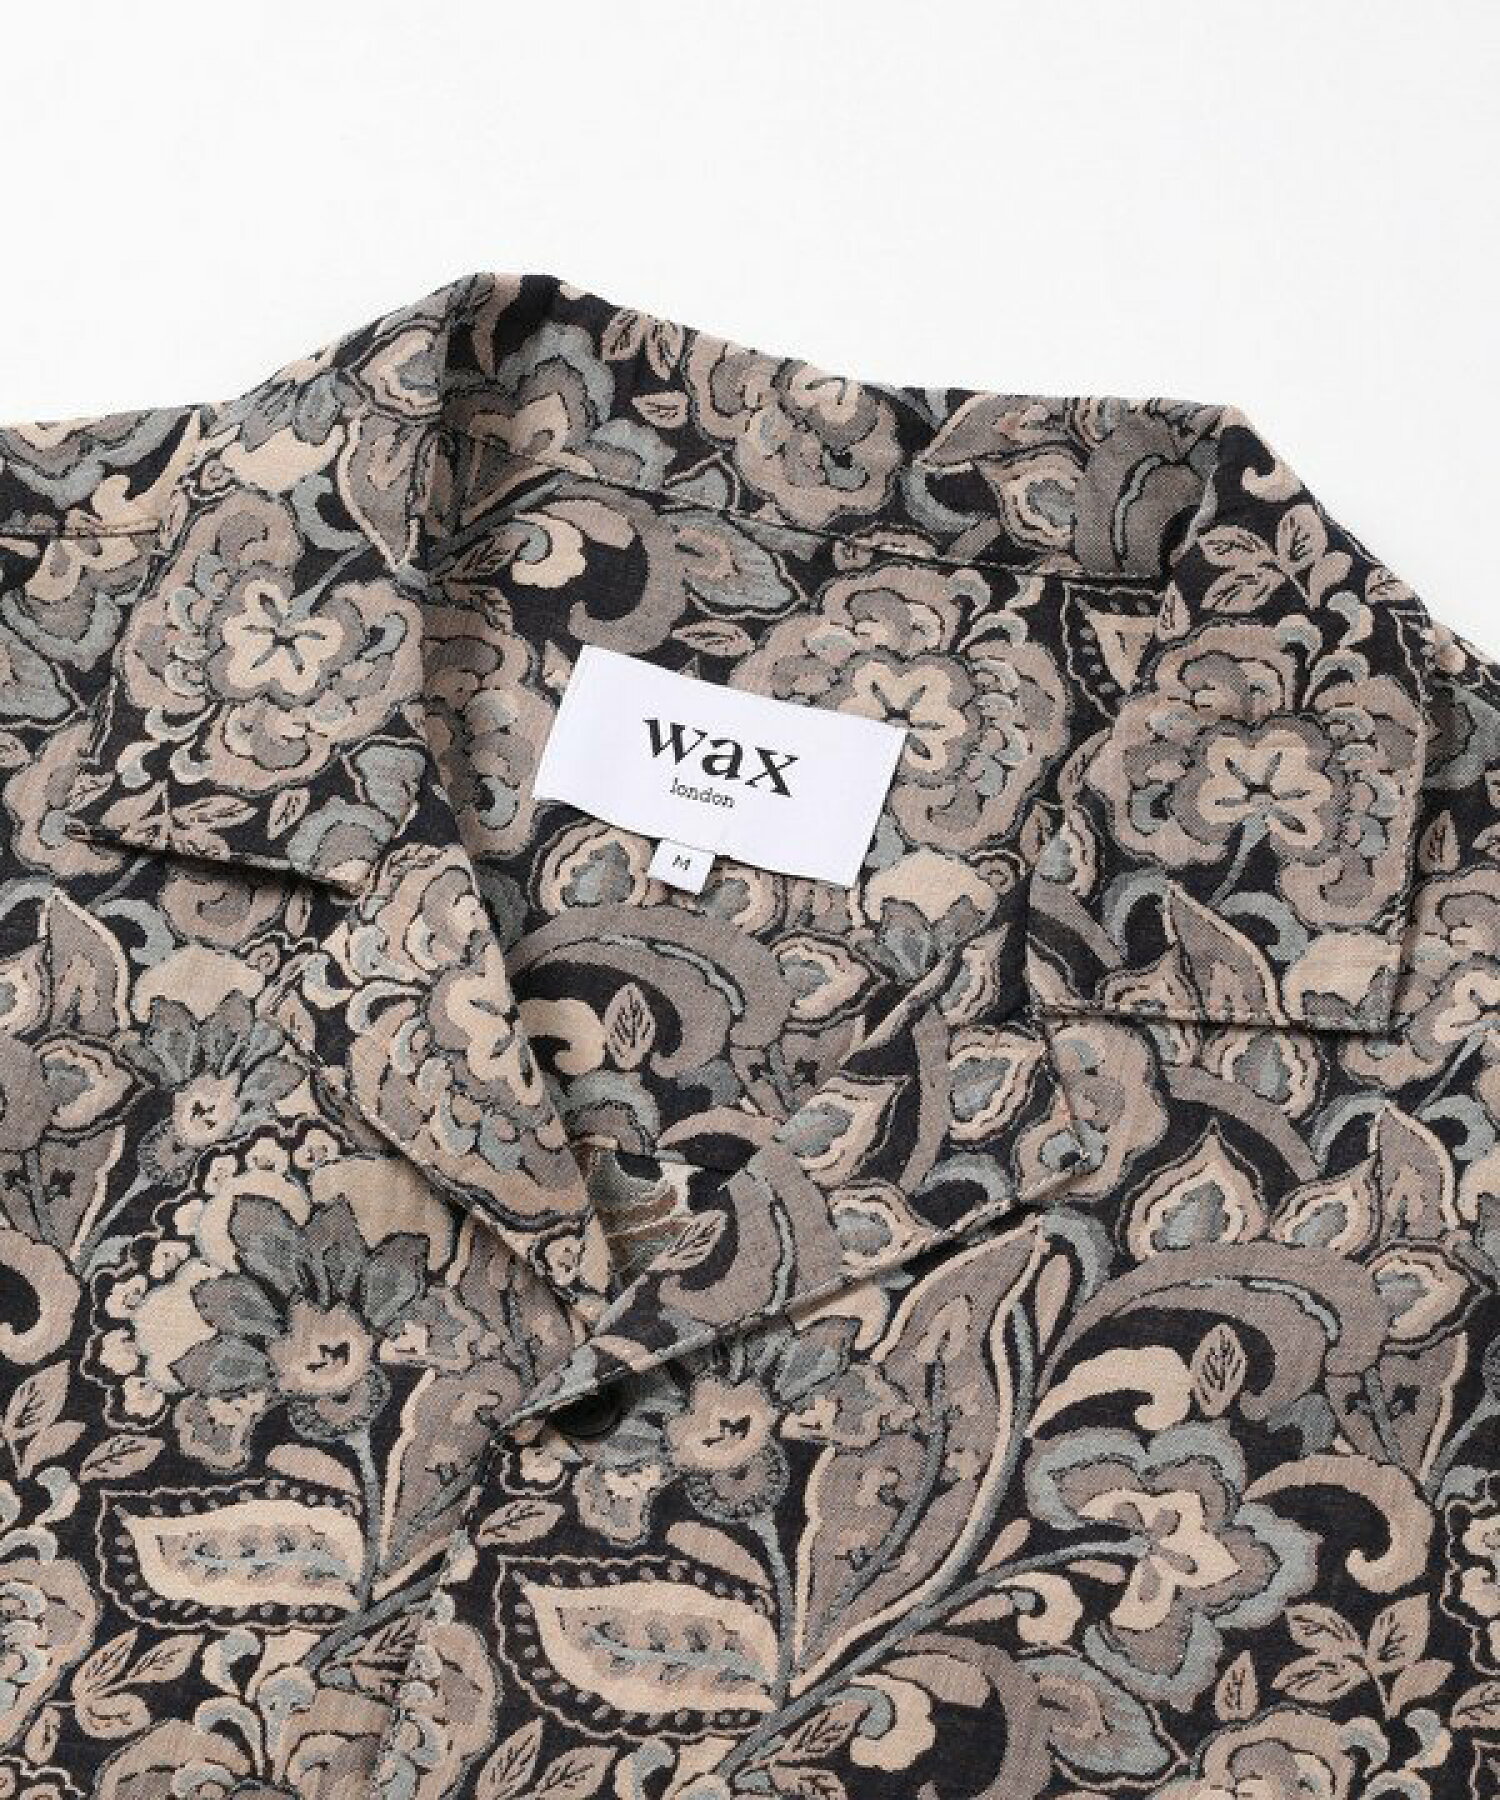 【WAX LONDON】フラワージャカードオープンカラーシャツ